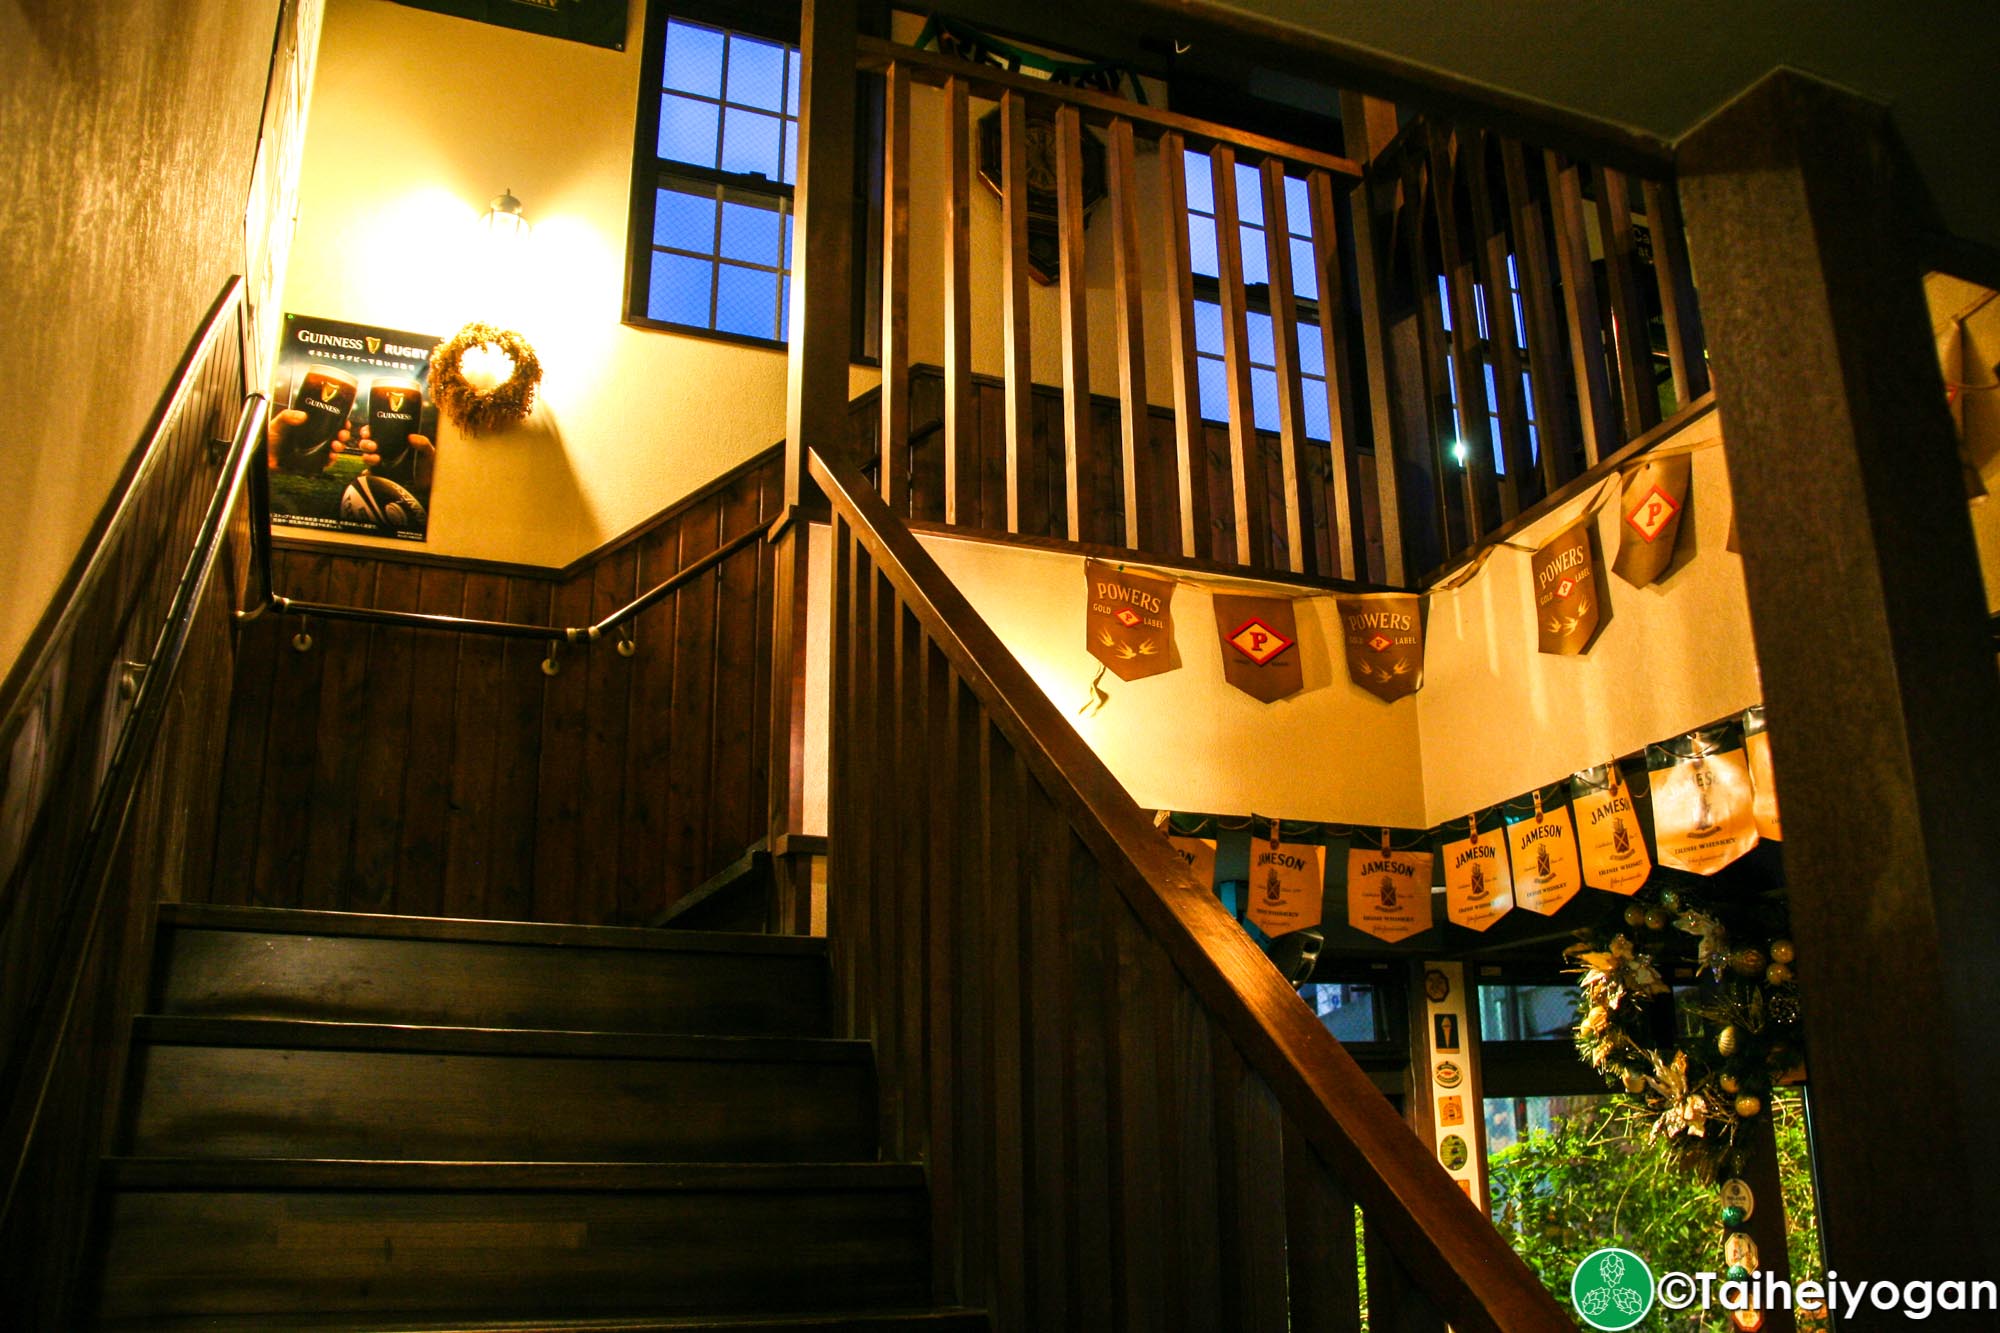 Irish Bar McCann's - Interior - Stairs to 3rd Floor